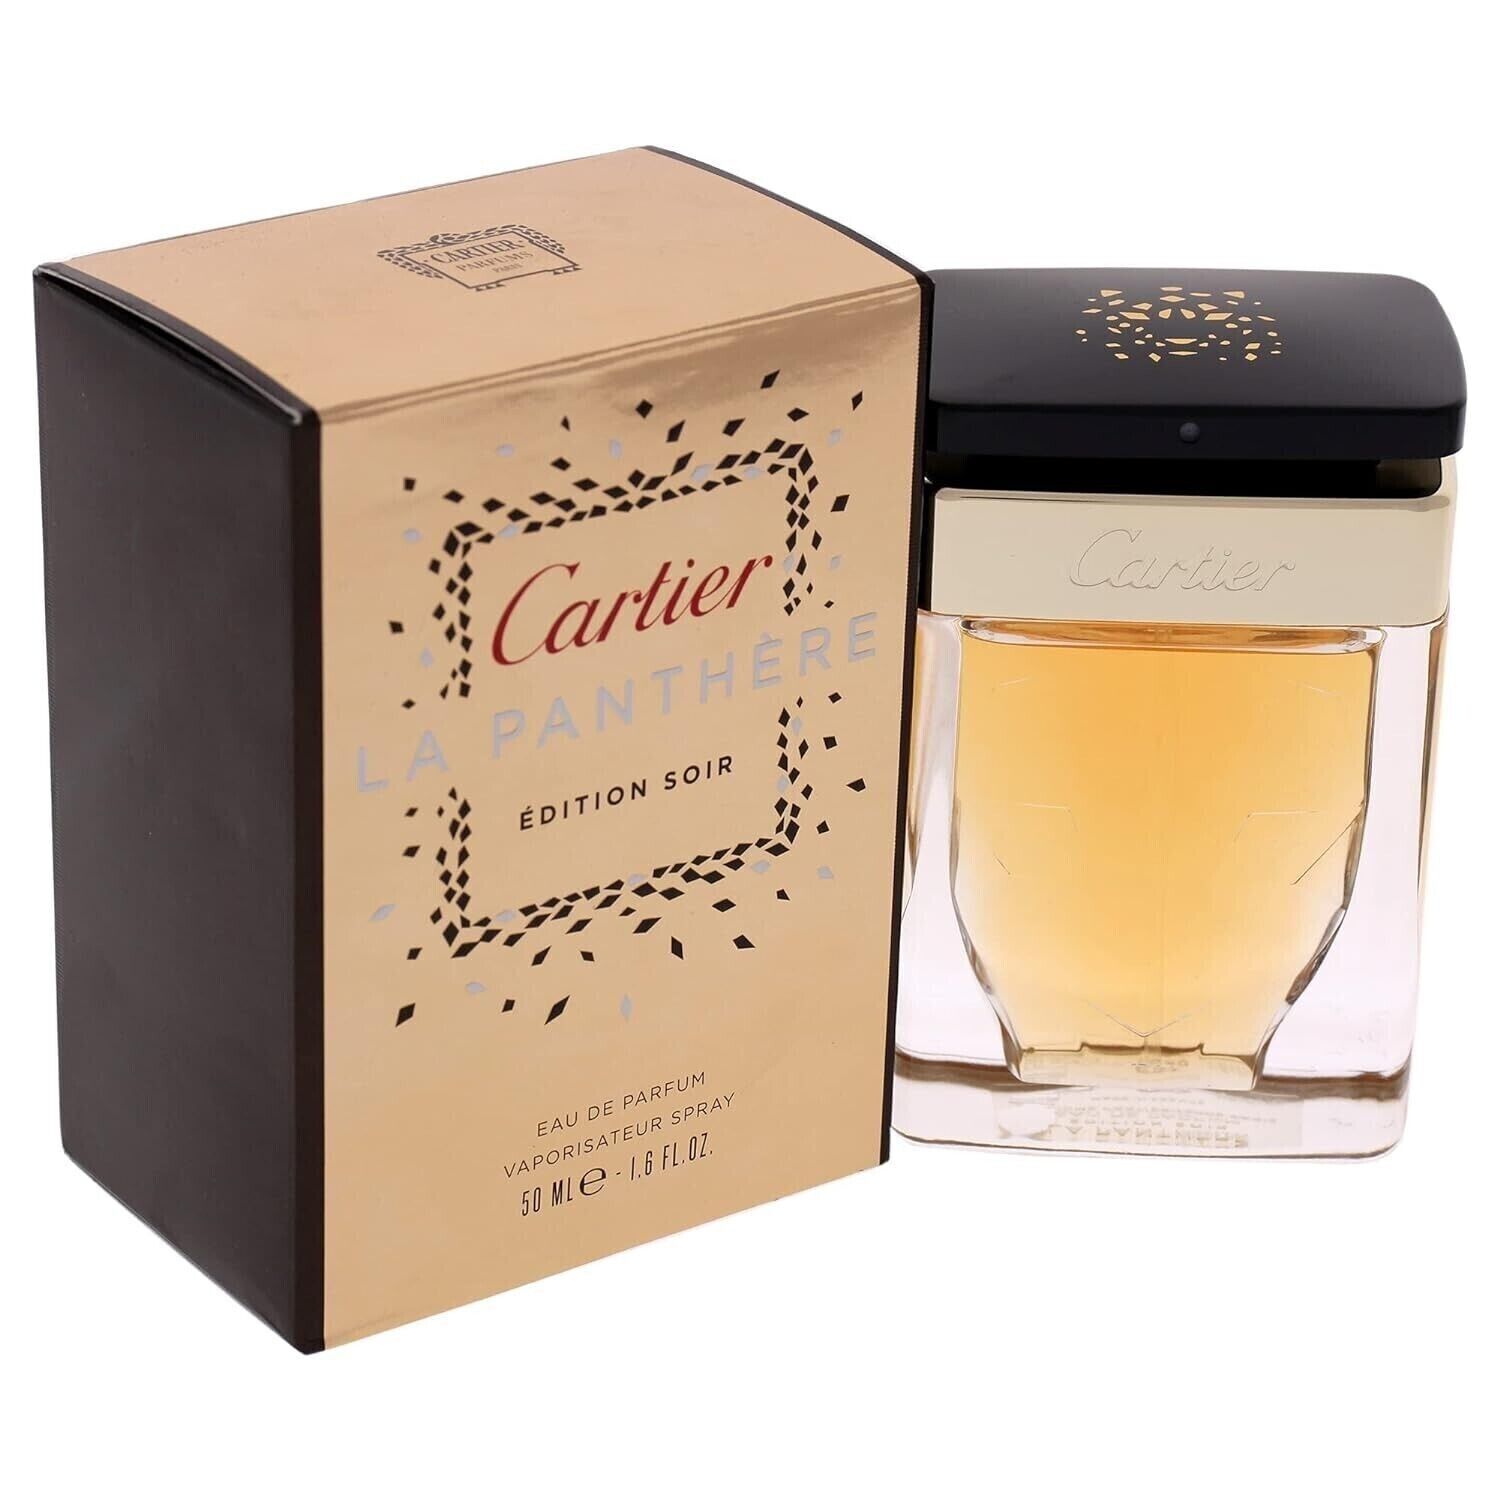 Cartier La Panthere Edition Soir Eau de Parfum 1.6 Oz. Bottle Perfume for Women